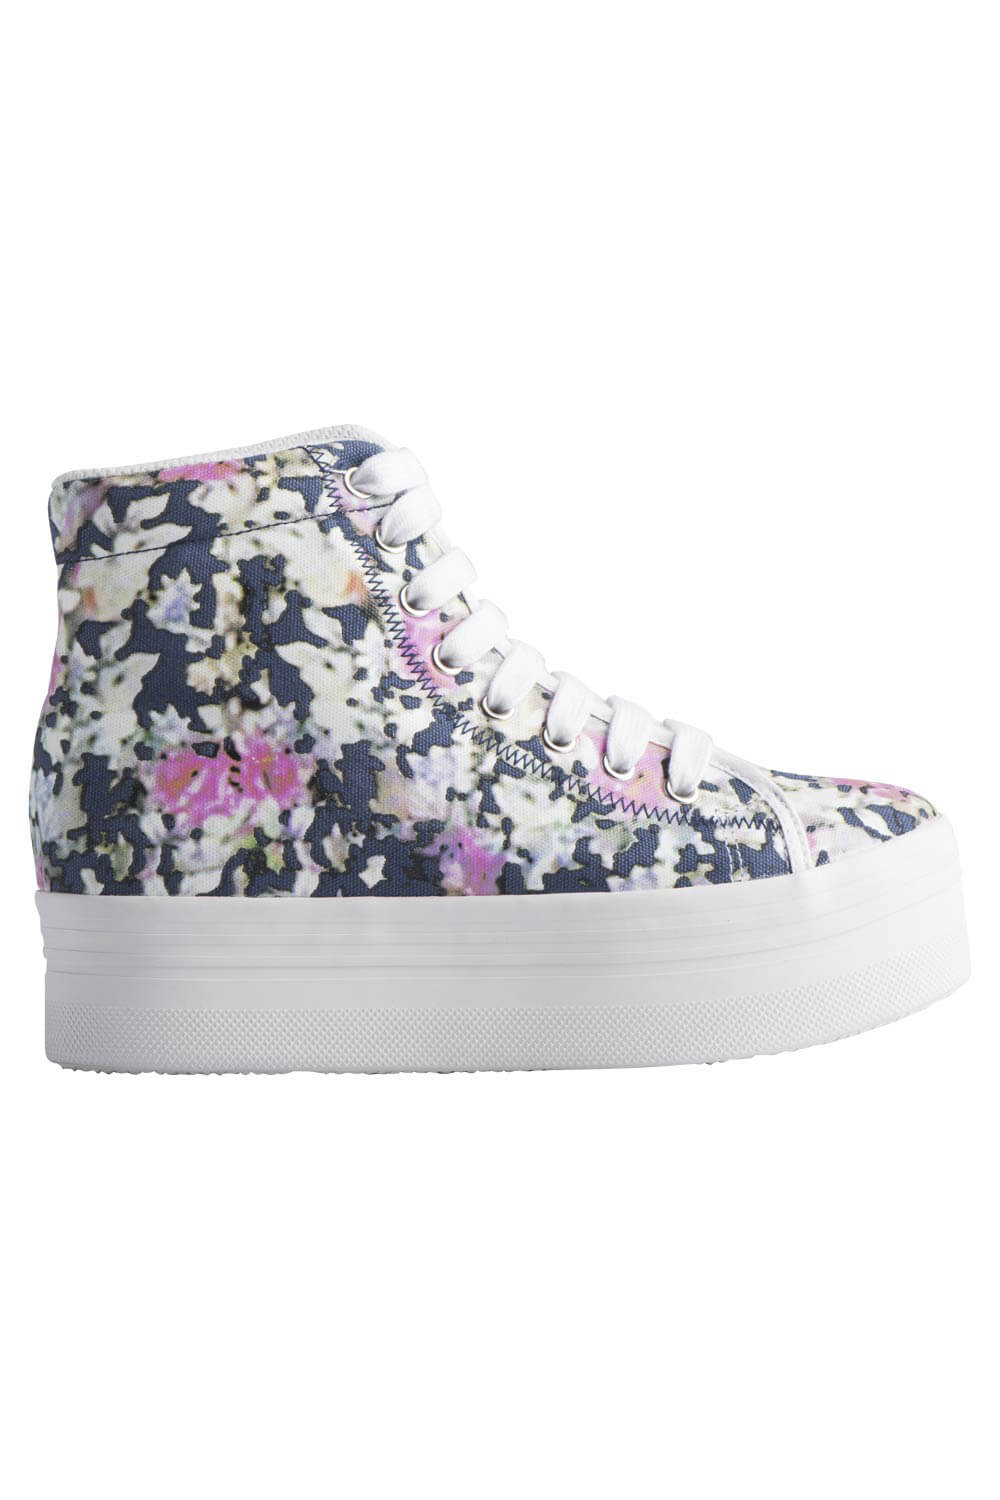 Γυναικεία Sneakers Τύπου Μποτάκια Jeffrey Campbell - Homg Blue Floral White